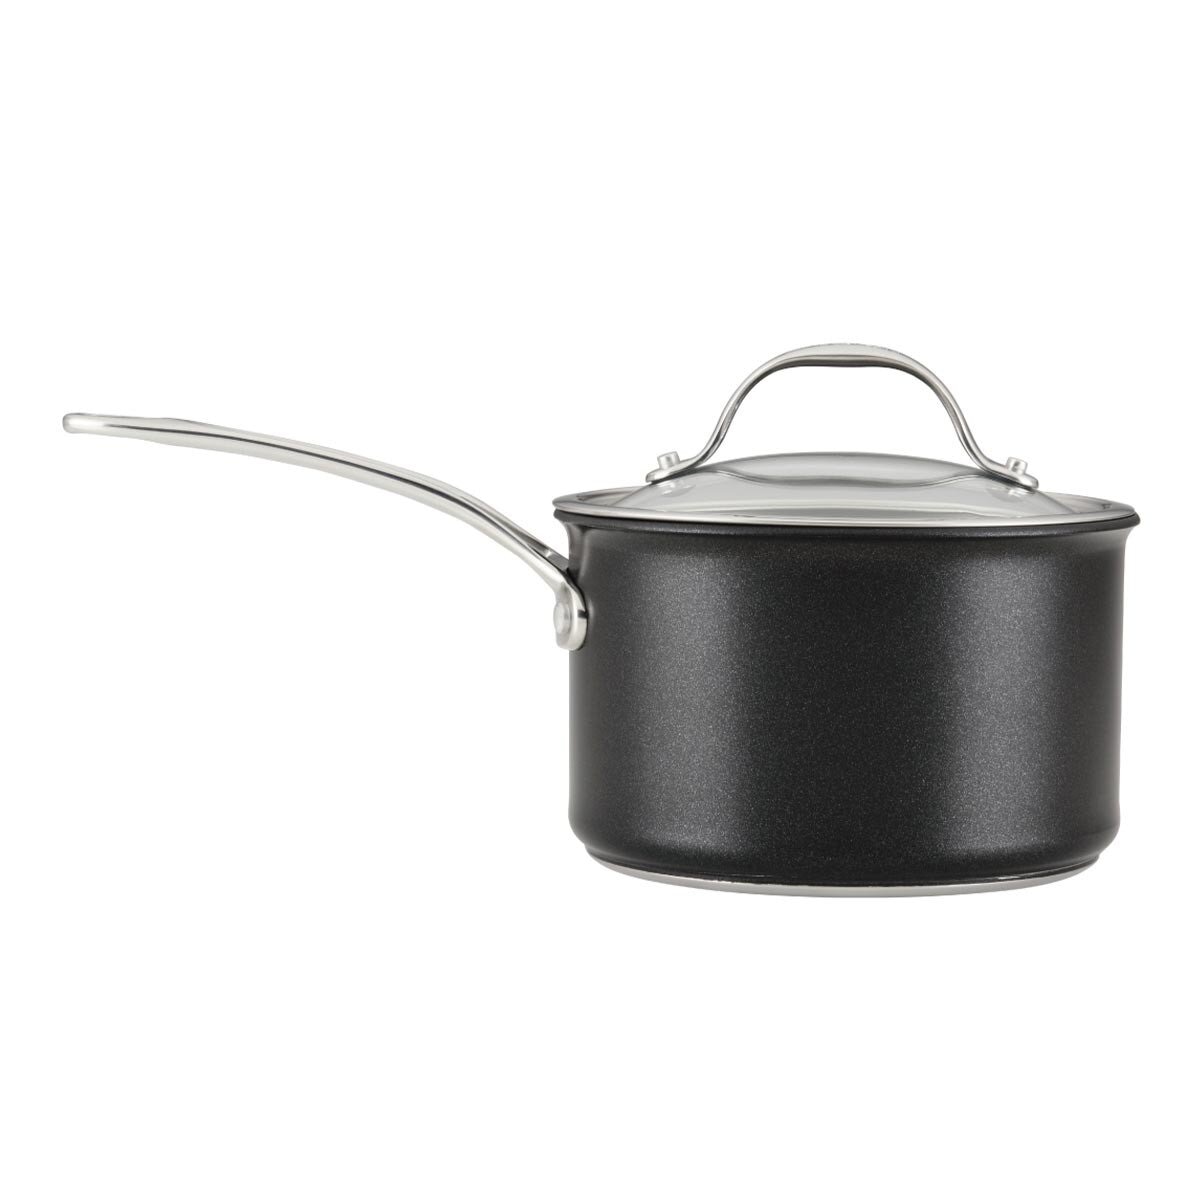 ANOLON ANOLON X 導磁不沾單柄湯鍋含蓋 18公分